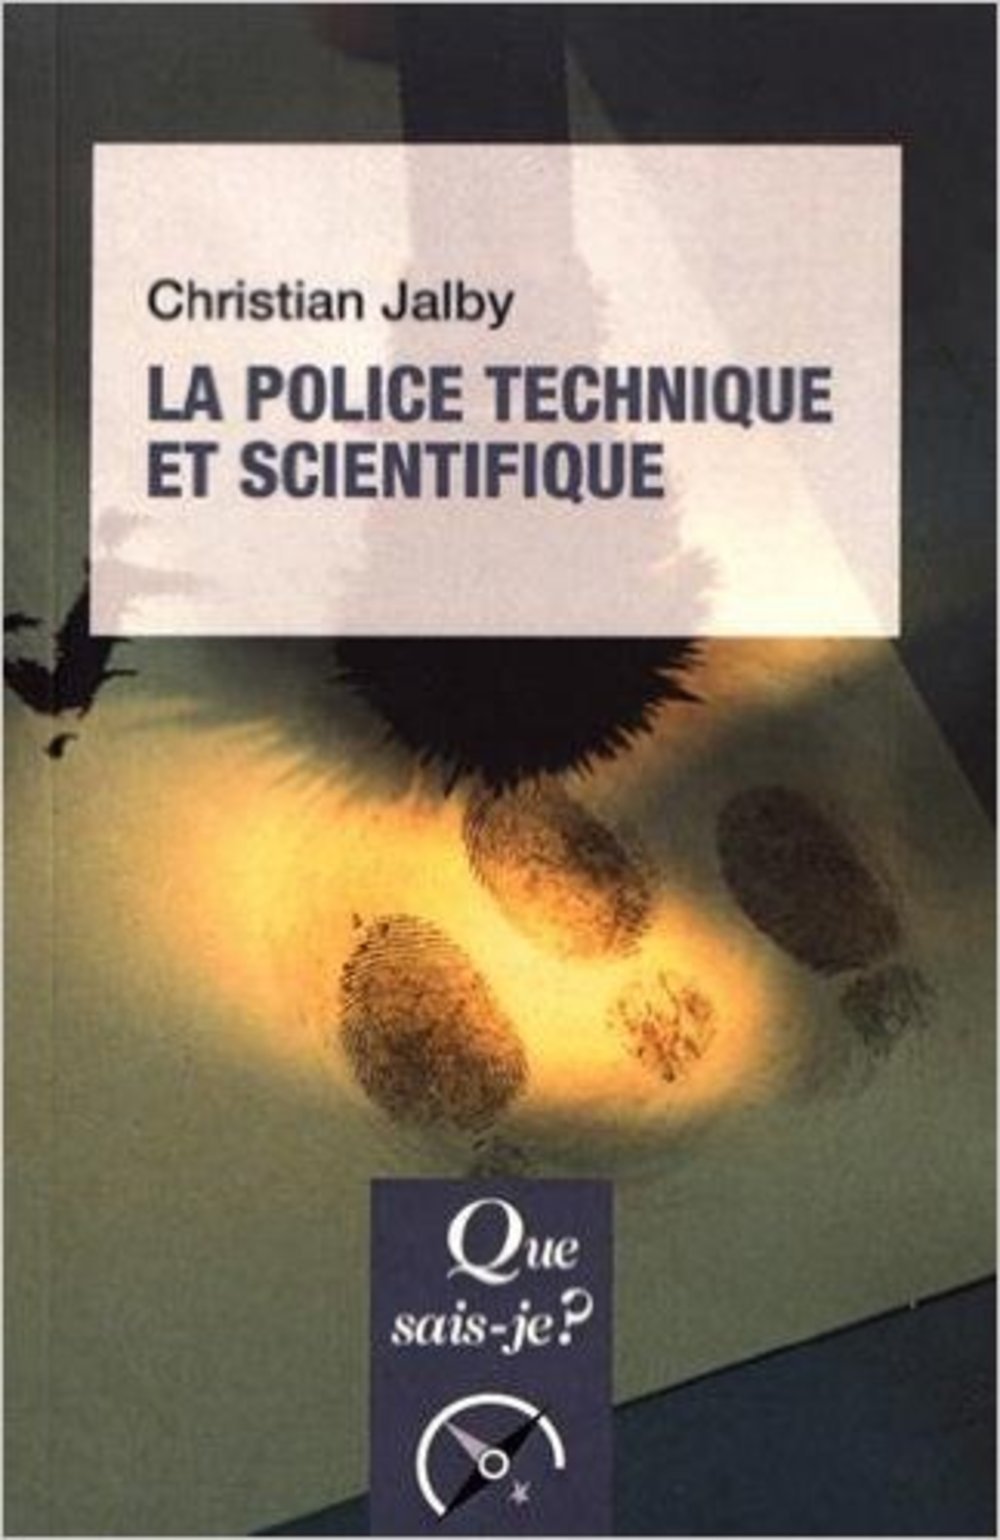 Les Archives de la police scientifique française